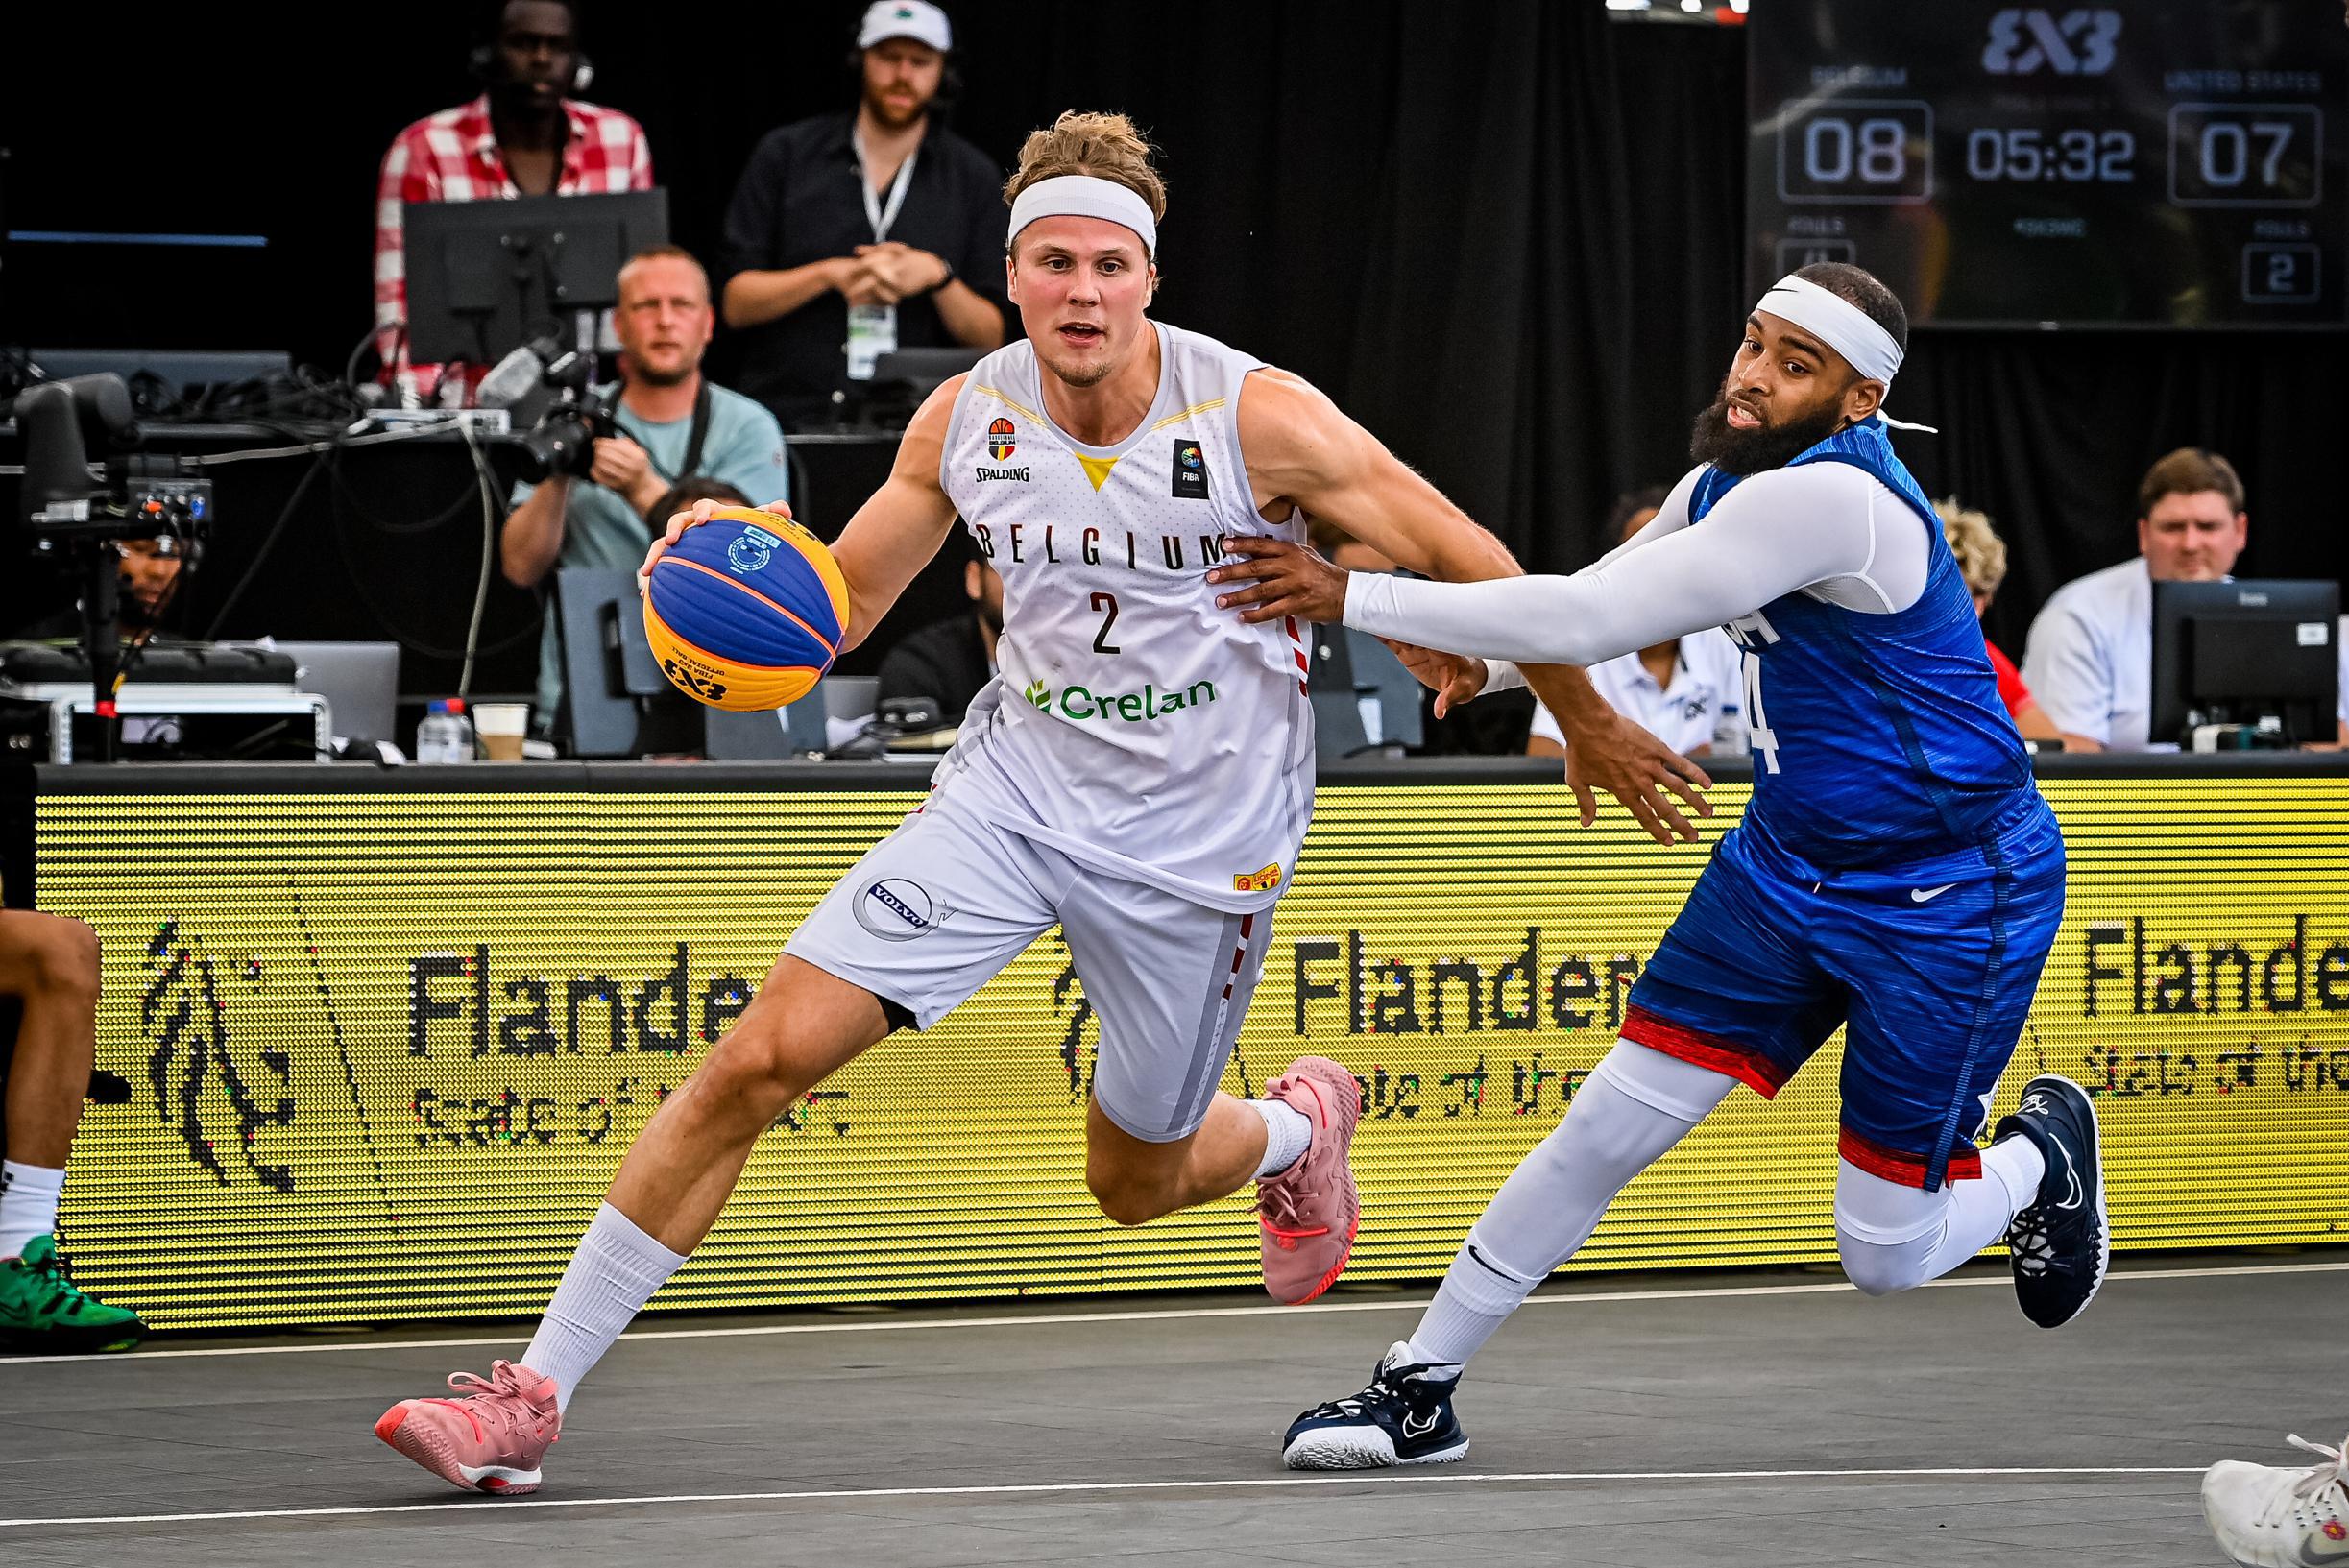 Belgische mannen strijden dit weekend in Oostenrijk om eremetaal op EK basket 3x3 